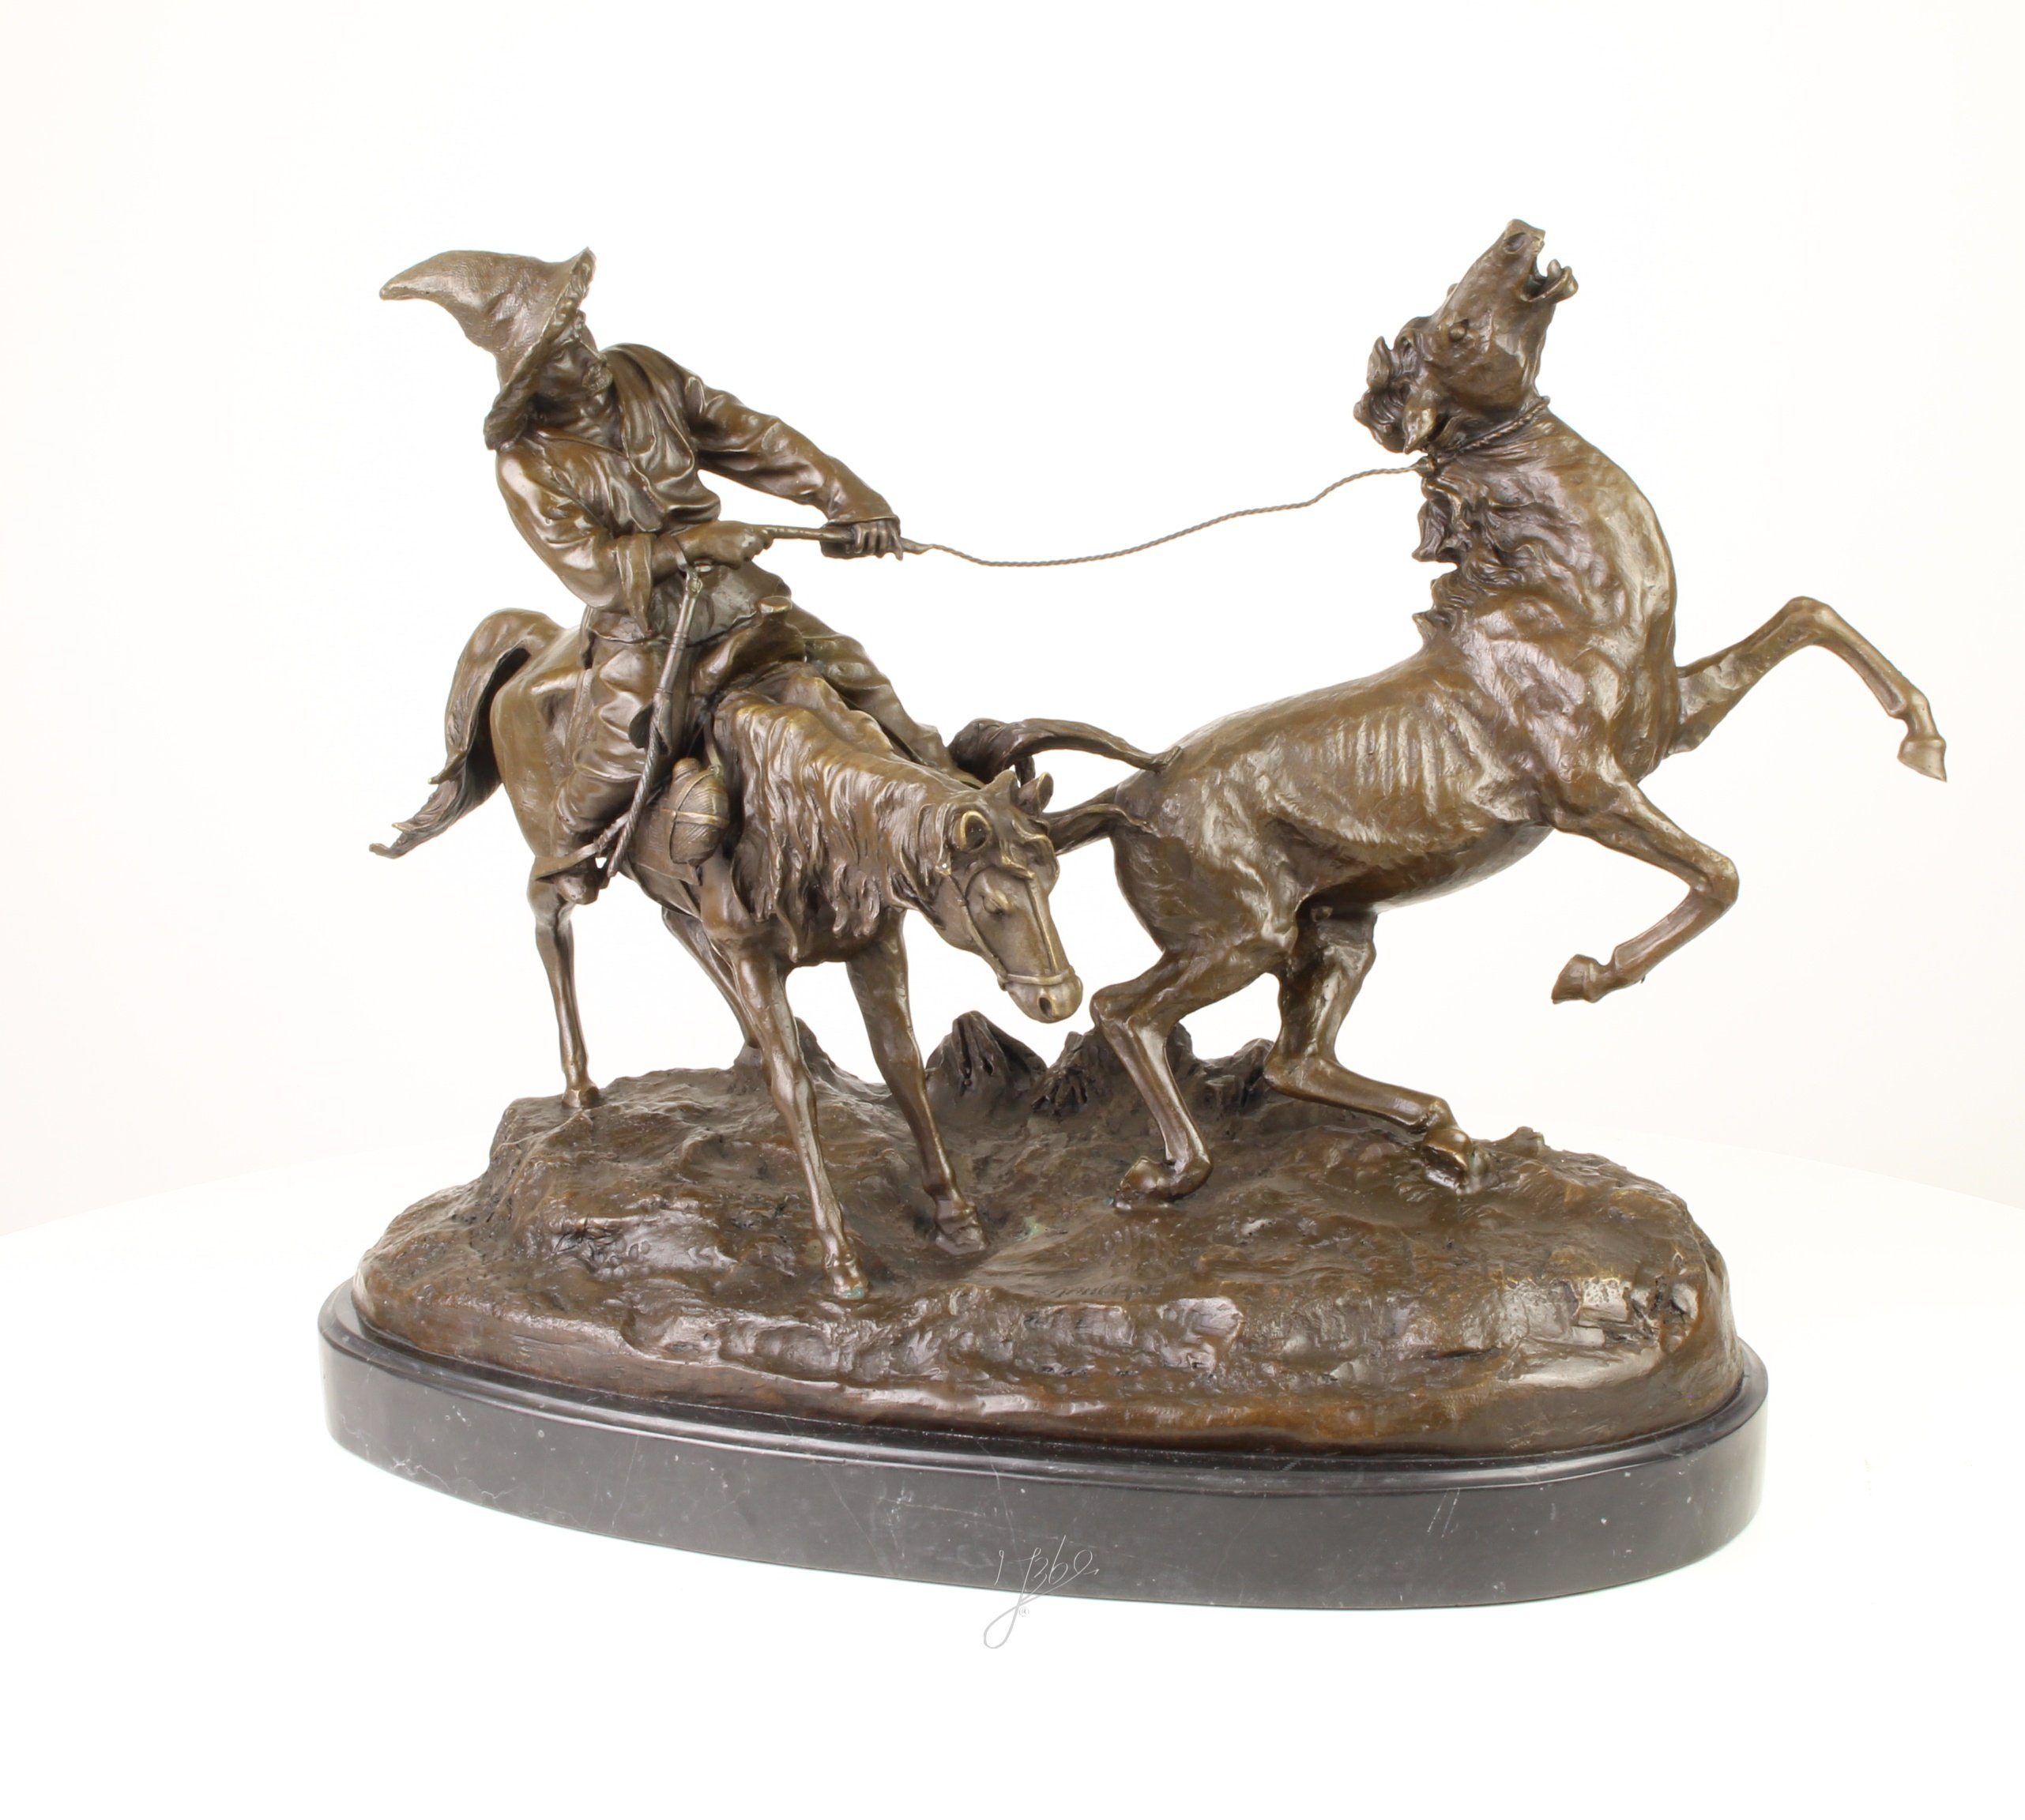 Moritz Skulptur Kirgisischer Jäger fängt Pferd zähmen, Bronzefiguren Bronze  Skulptur Figur Kunstwerk Dekoration Statue